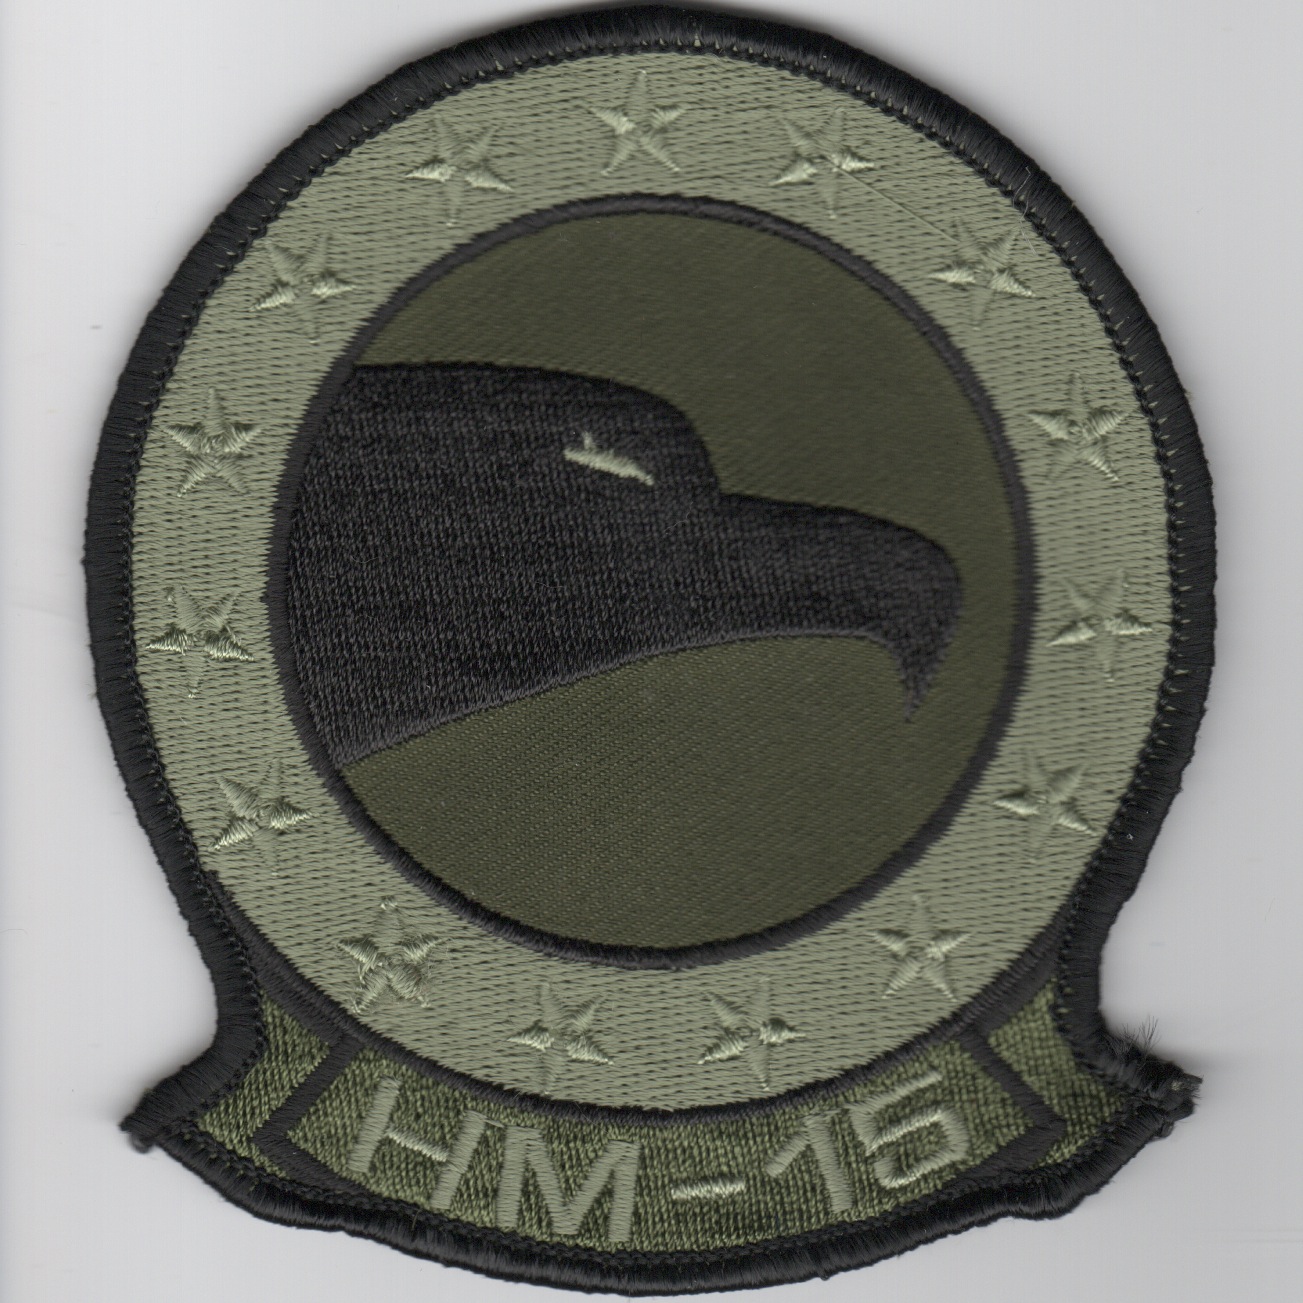 HM-15 Squadron Patch (Subd)